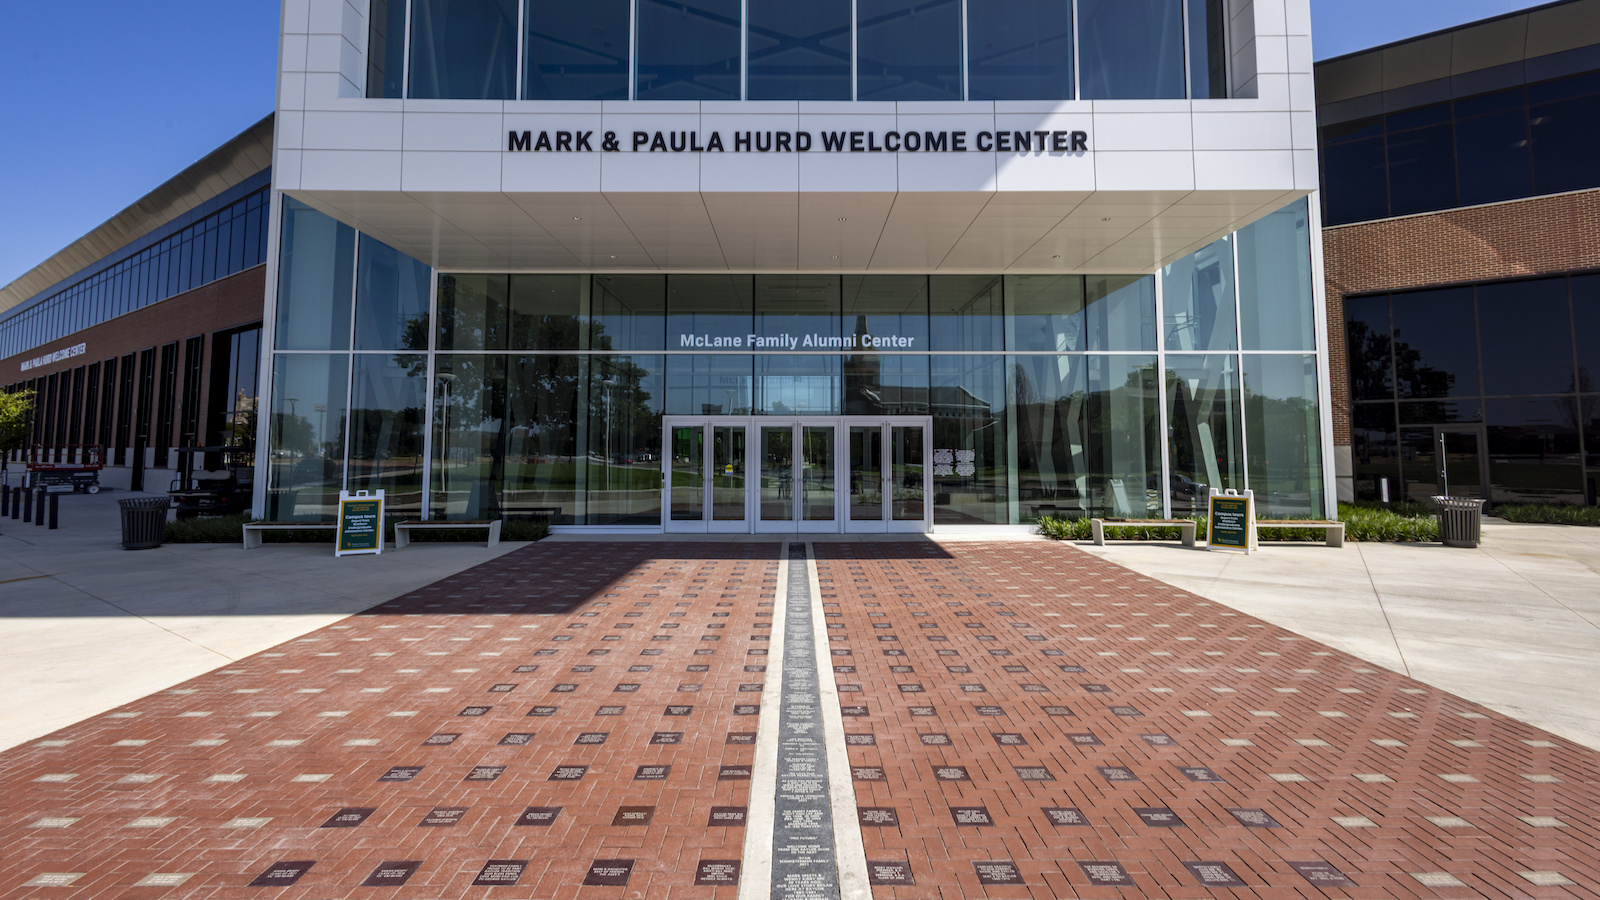 Mark & Paula Hurd Welcome Center